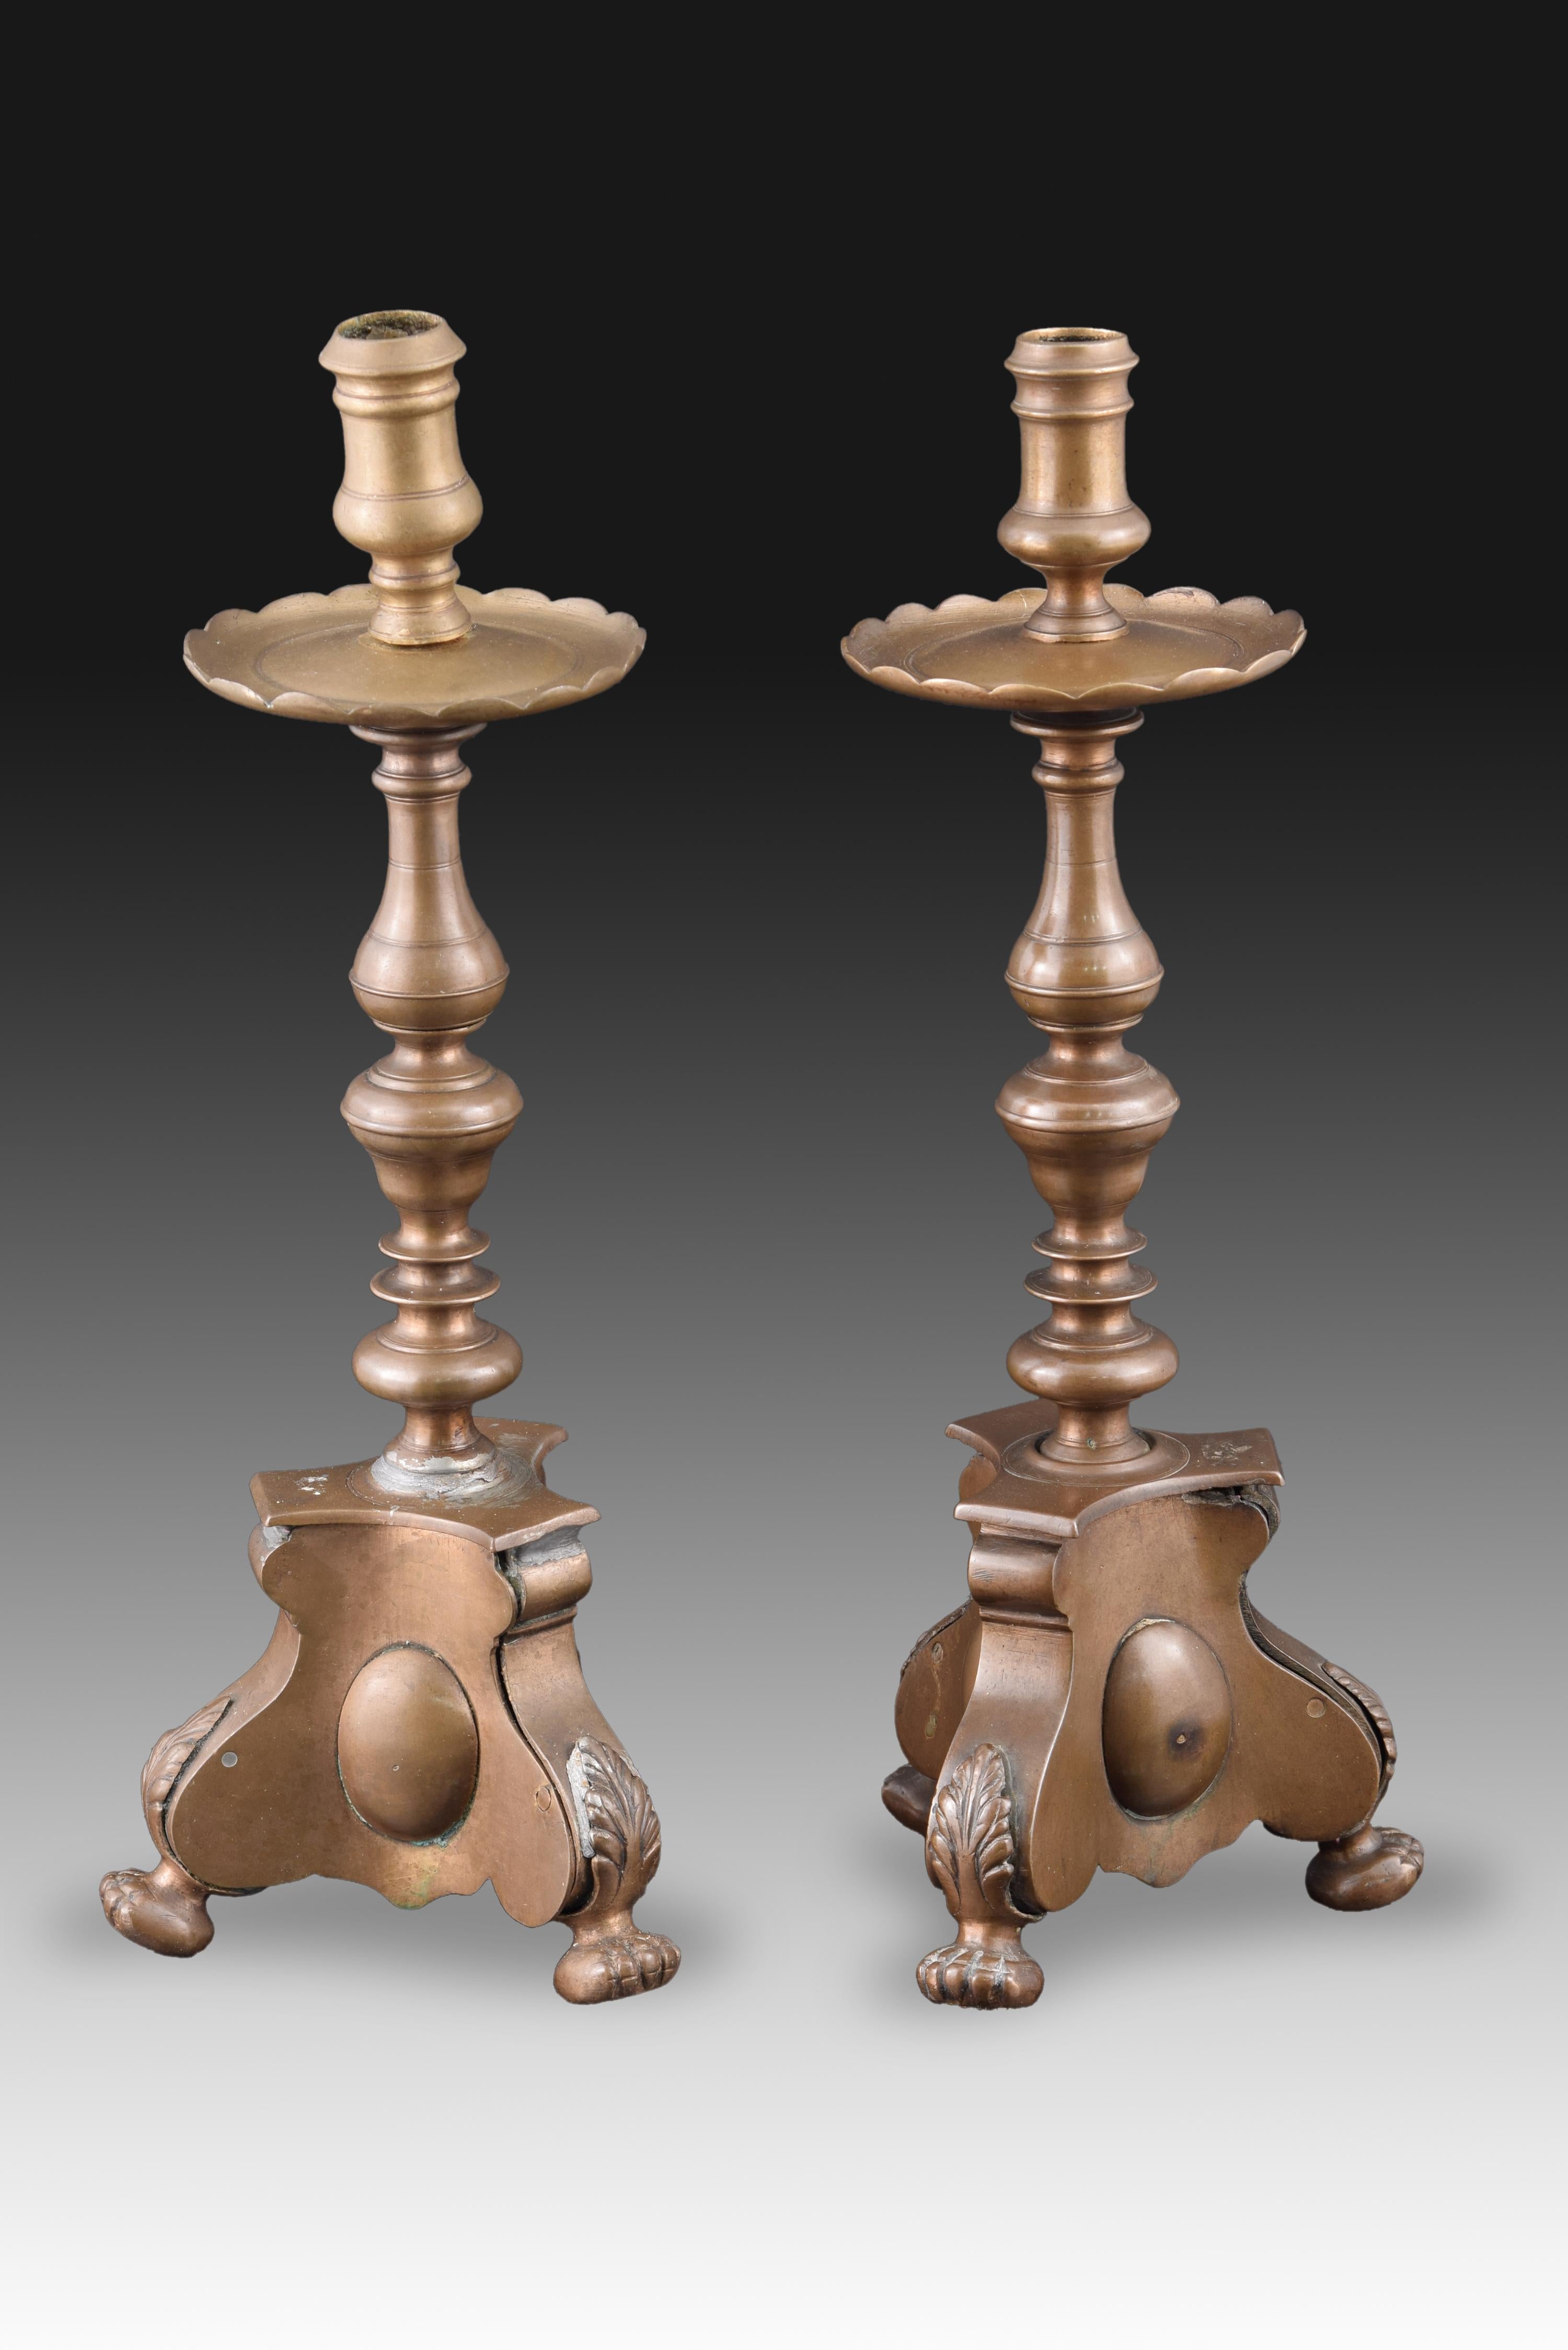 Paar Kerzenständer. Bronze, 18. Jahrhundert.
Ein Paar bronzener Leuchter, die einen starken Einfluss des spanischen Barocks beibehalten, besonders in der gedrehten Achse, mit hervorstehenden Sockeln und kugelförmigen Beinen, die an Tierkrallen